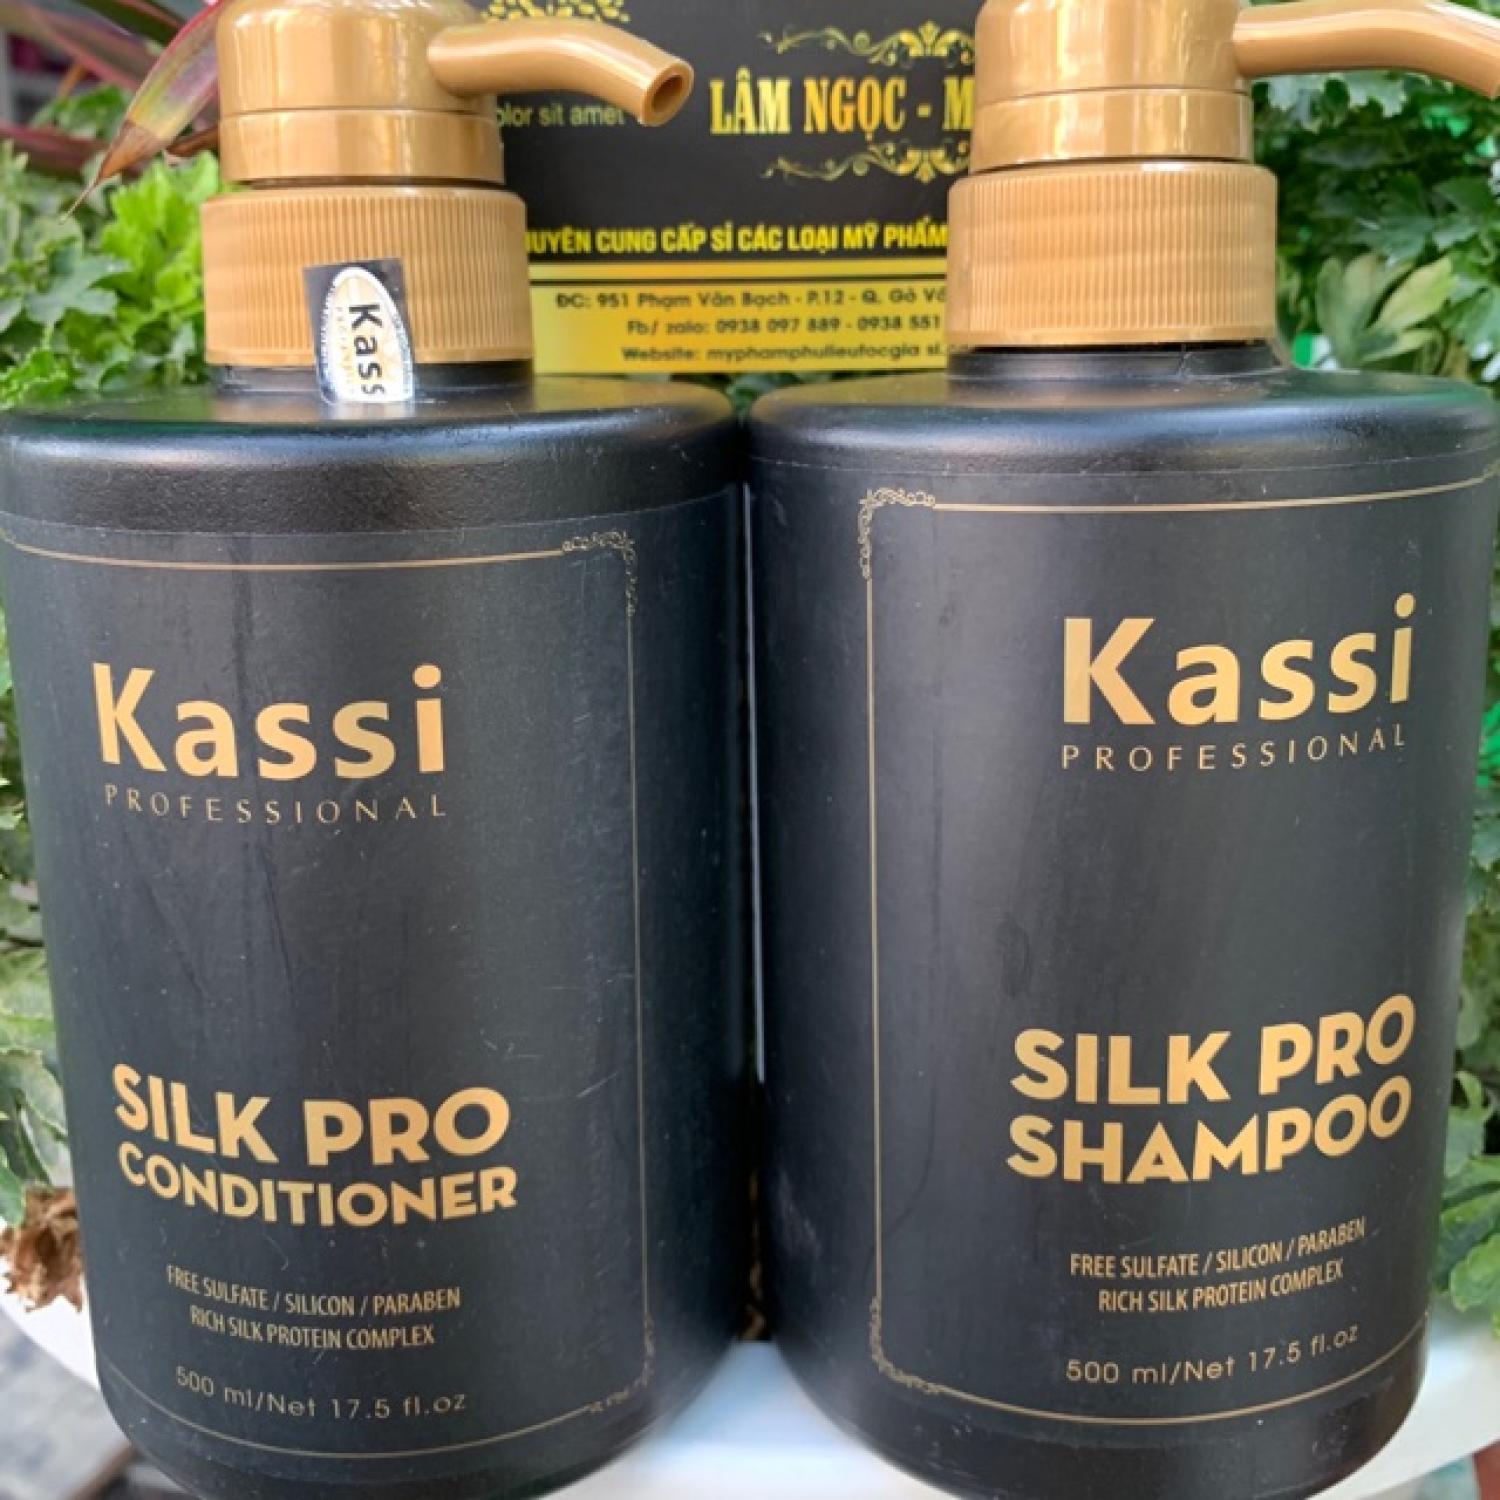 Kassi Nhuộm giá tốt là cơ hội để bạn sở hữu mái tóc thời thượng với chi phí tiết kiệm. Với sản phẩm chất lượng cao cấp, khả năng bảo vệ tóc và tạo màu sắc tuyệt đẹp, bạn sẽ hài lòng với sự lựa chọn này. Hãy xem thêm hình ảnh để cảm nhận được sự khác biệt mà sản phẩm đem lại.